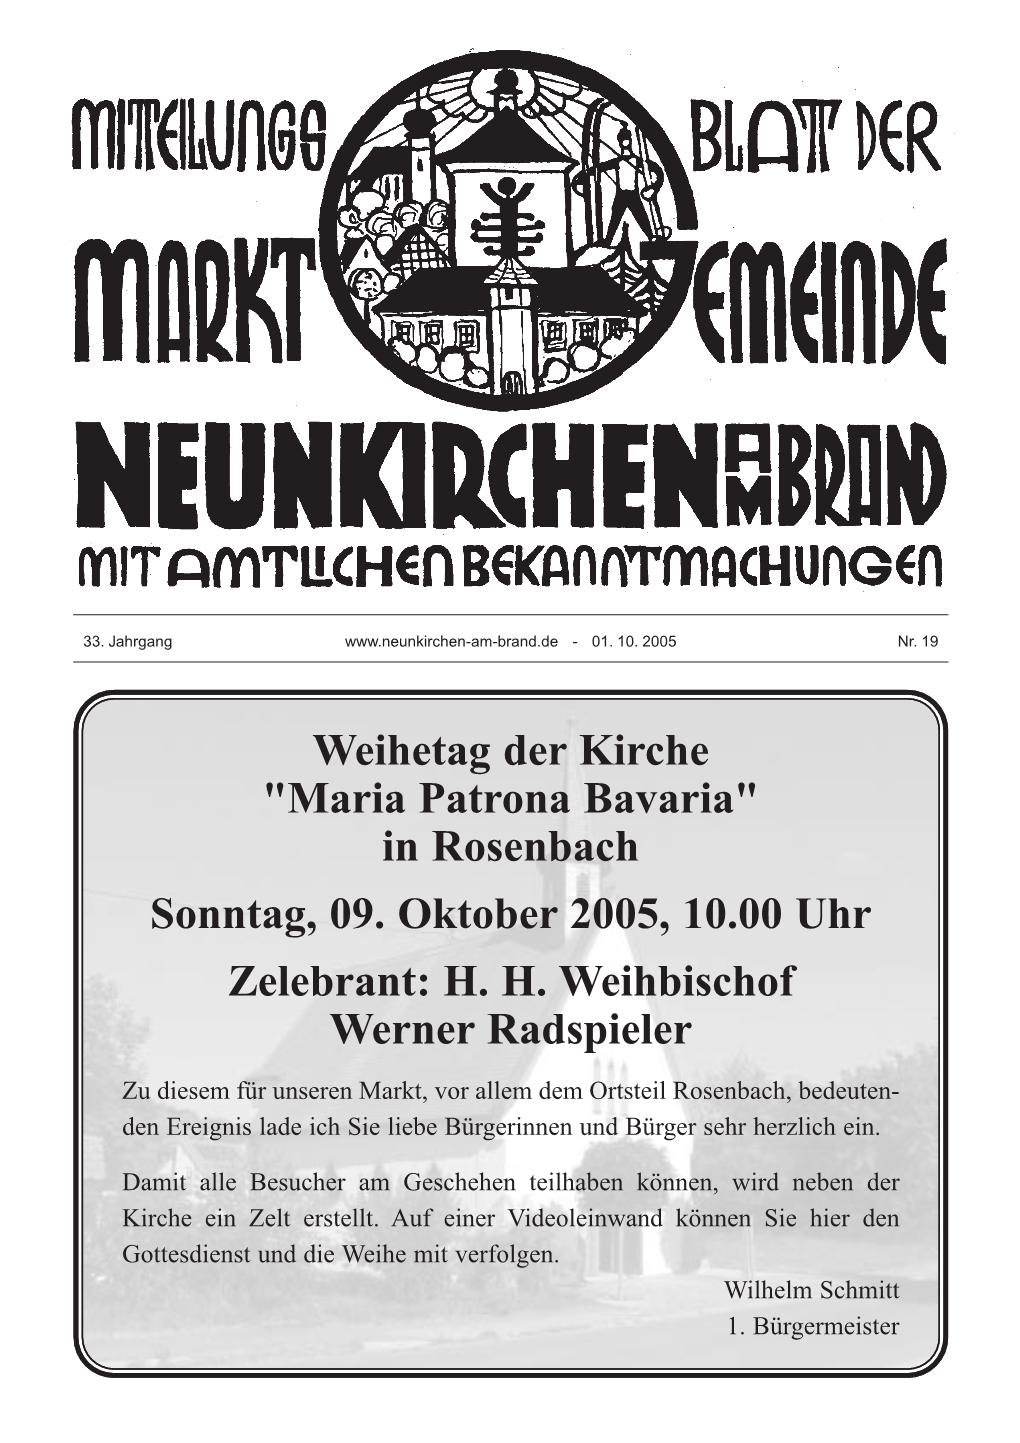 In Rosenbach Sonntag, 09. Oktober 2005, 10.00 Uhr Zelebrant: H